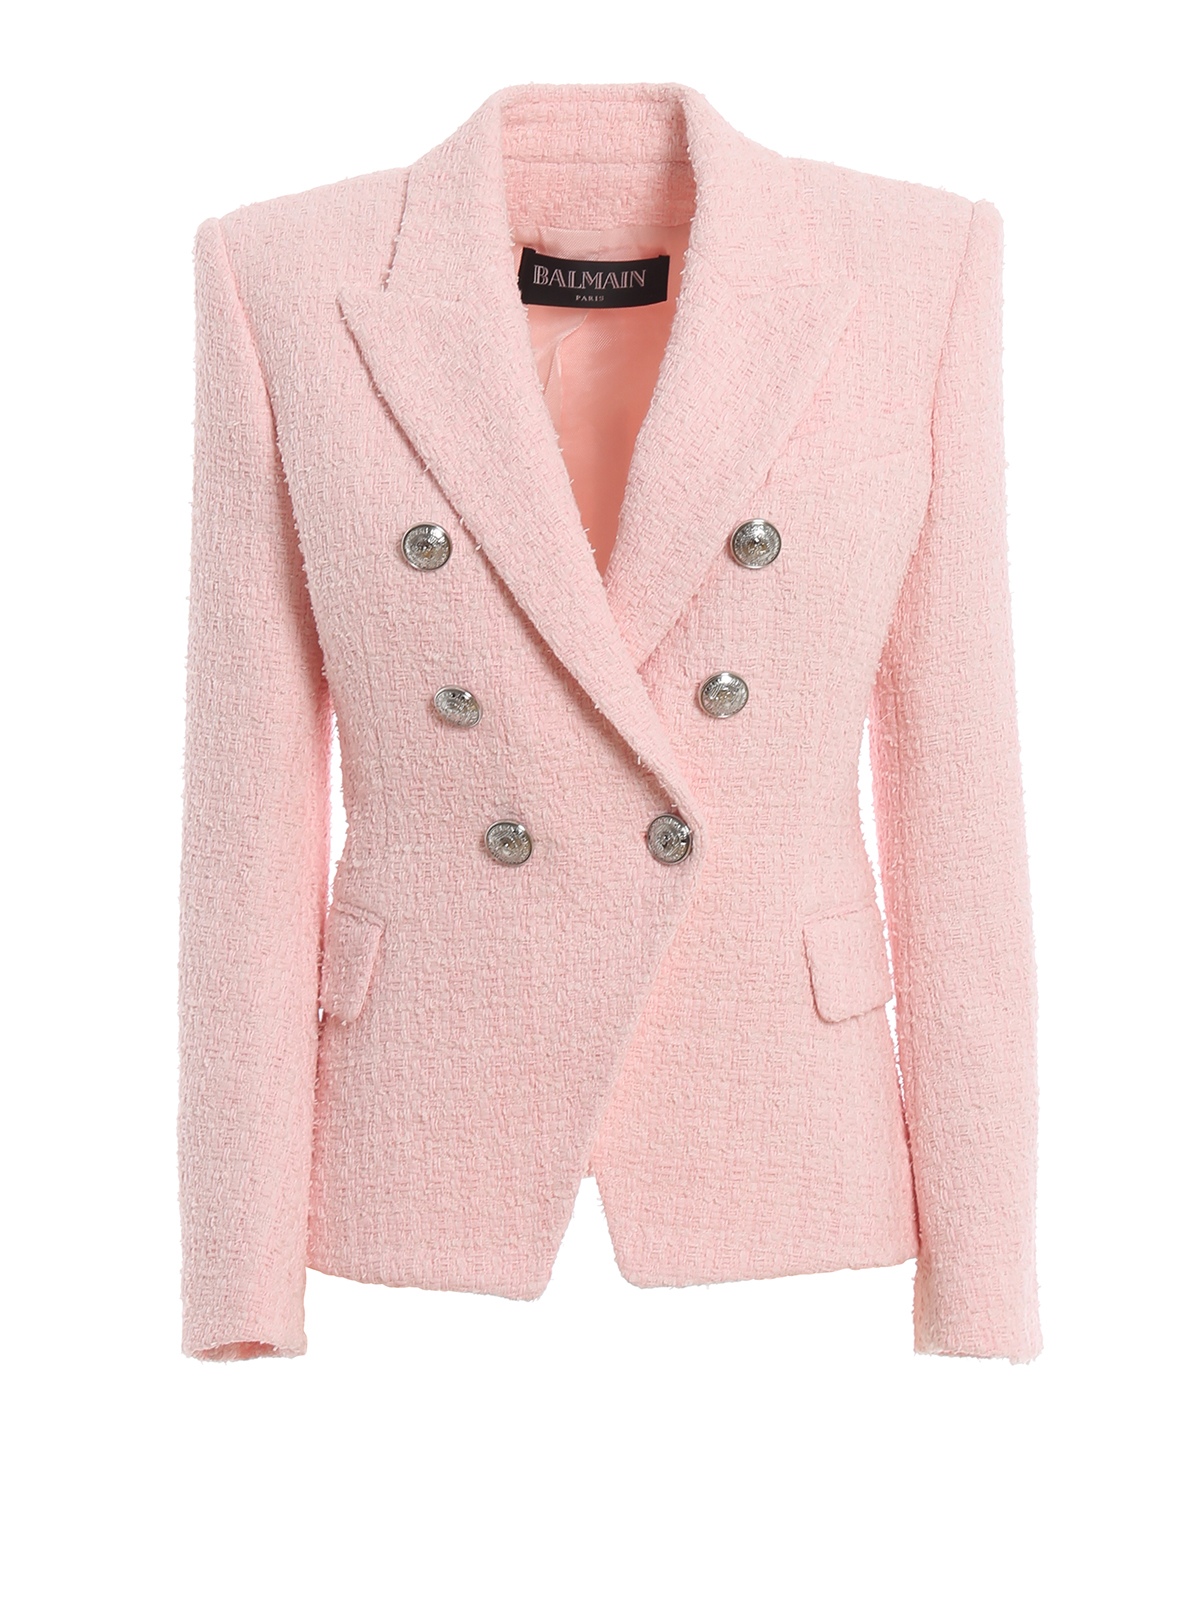 Ræv slutningen Tom Audreath Blazers Balmain - Light pink cotton blend tweed blazer - RF07150C1384AF